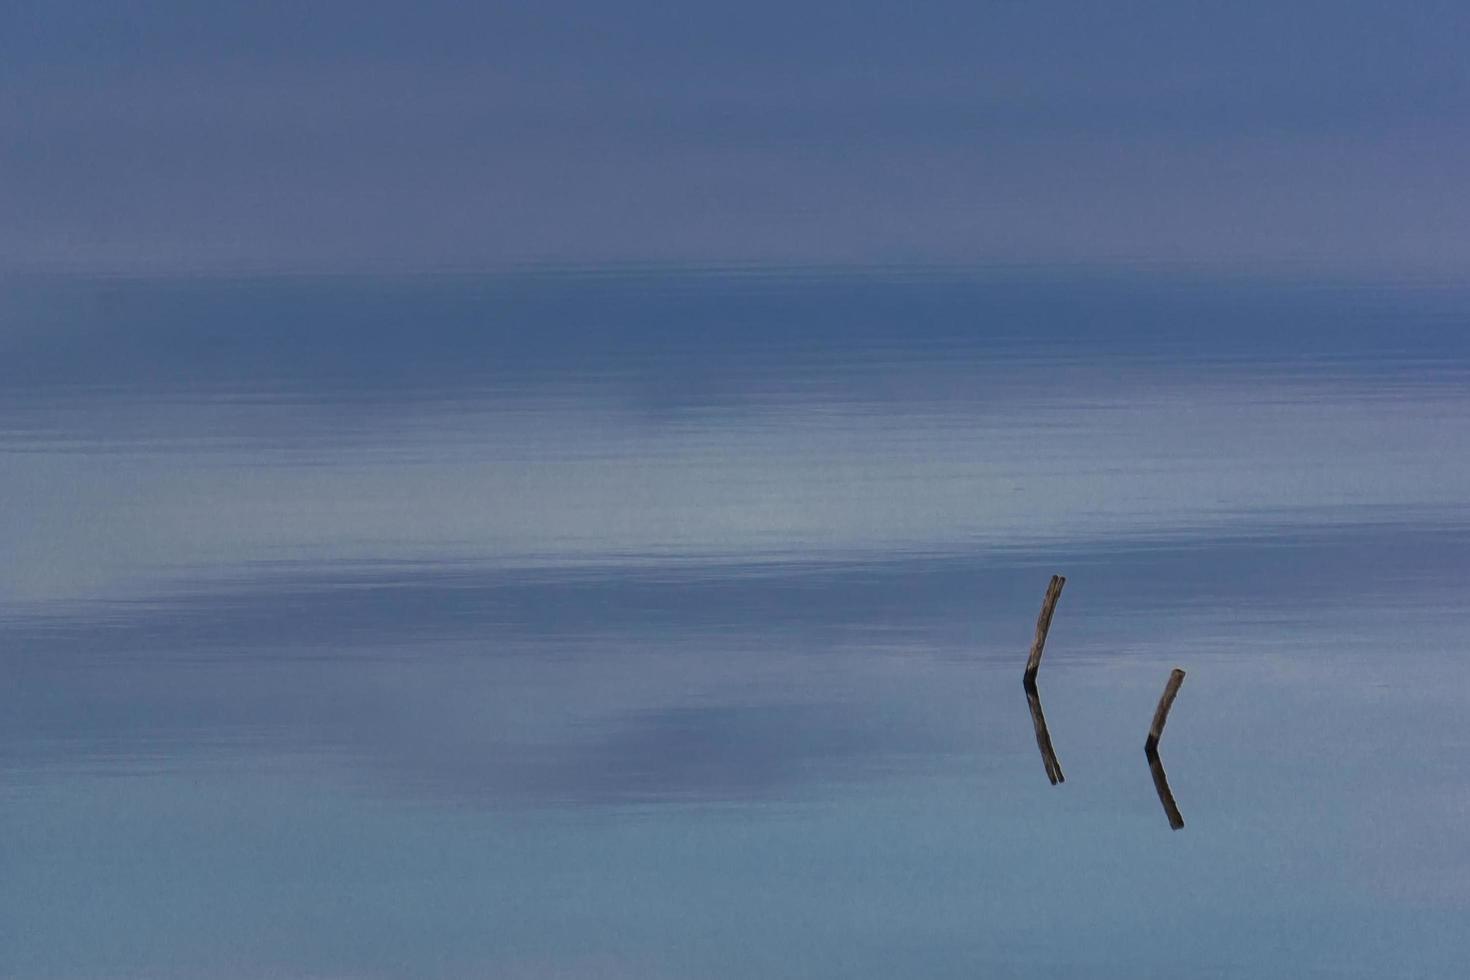 legname galleggiante sul lago calmo foto